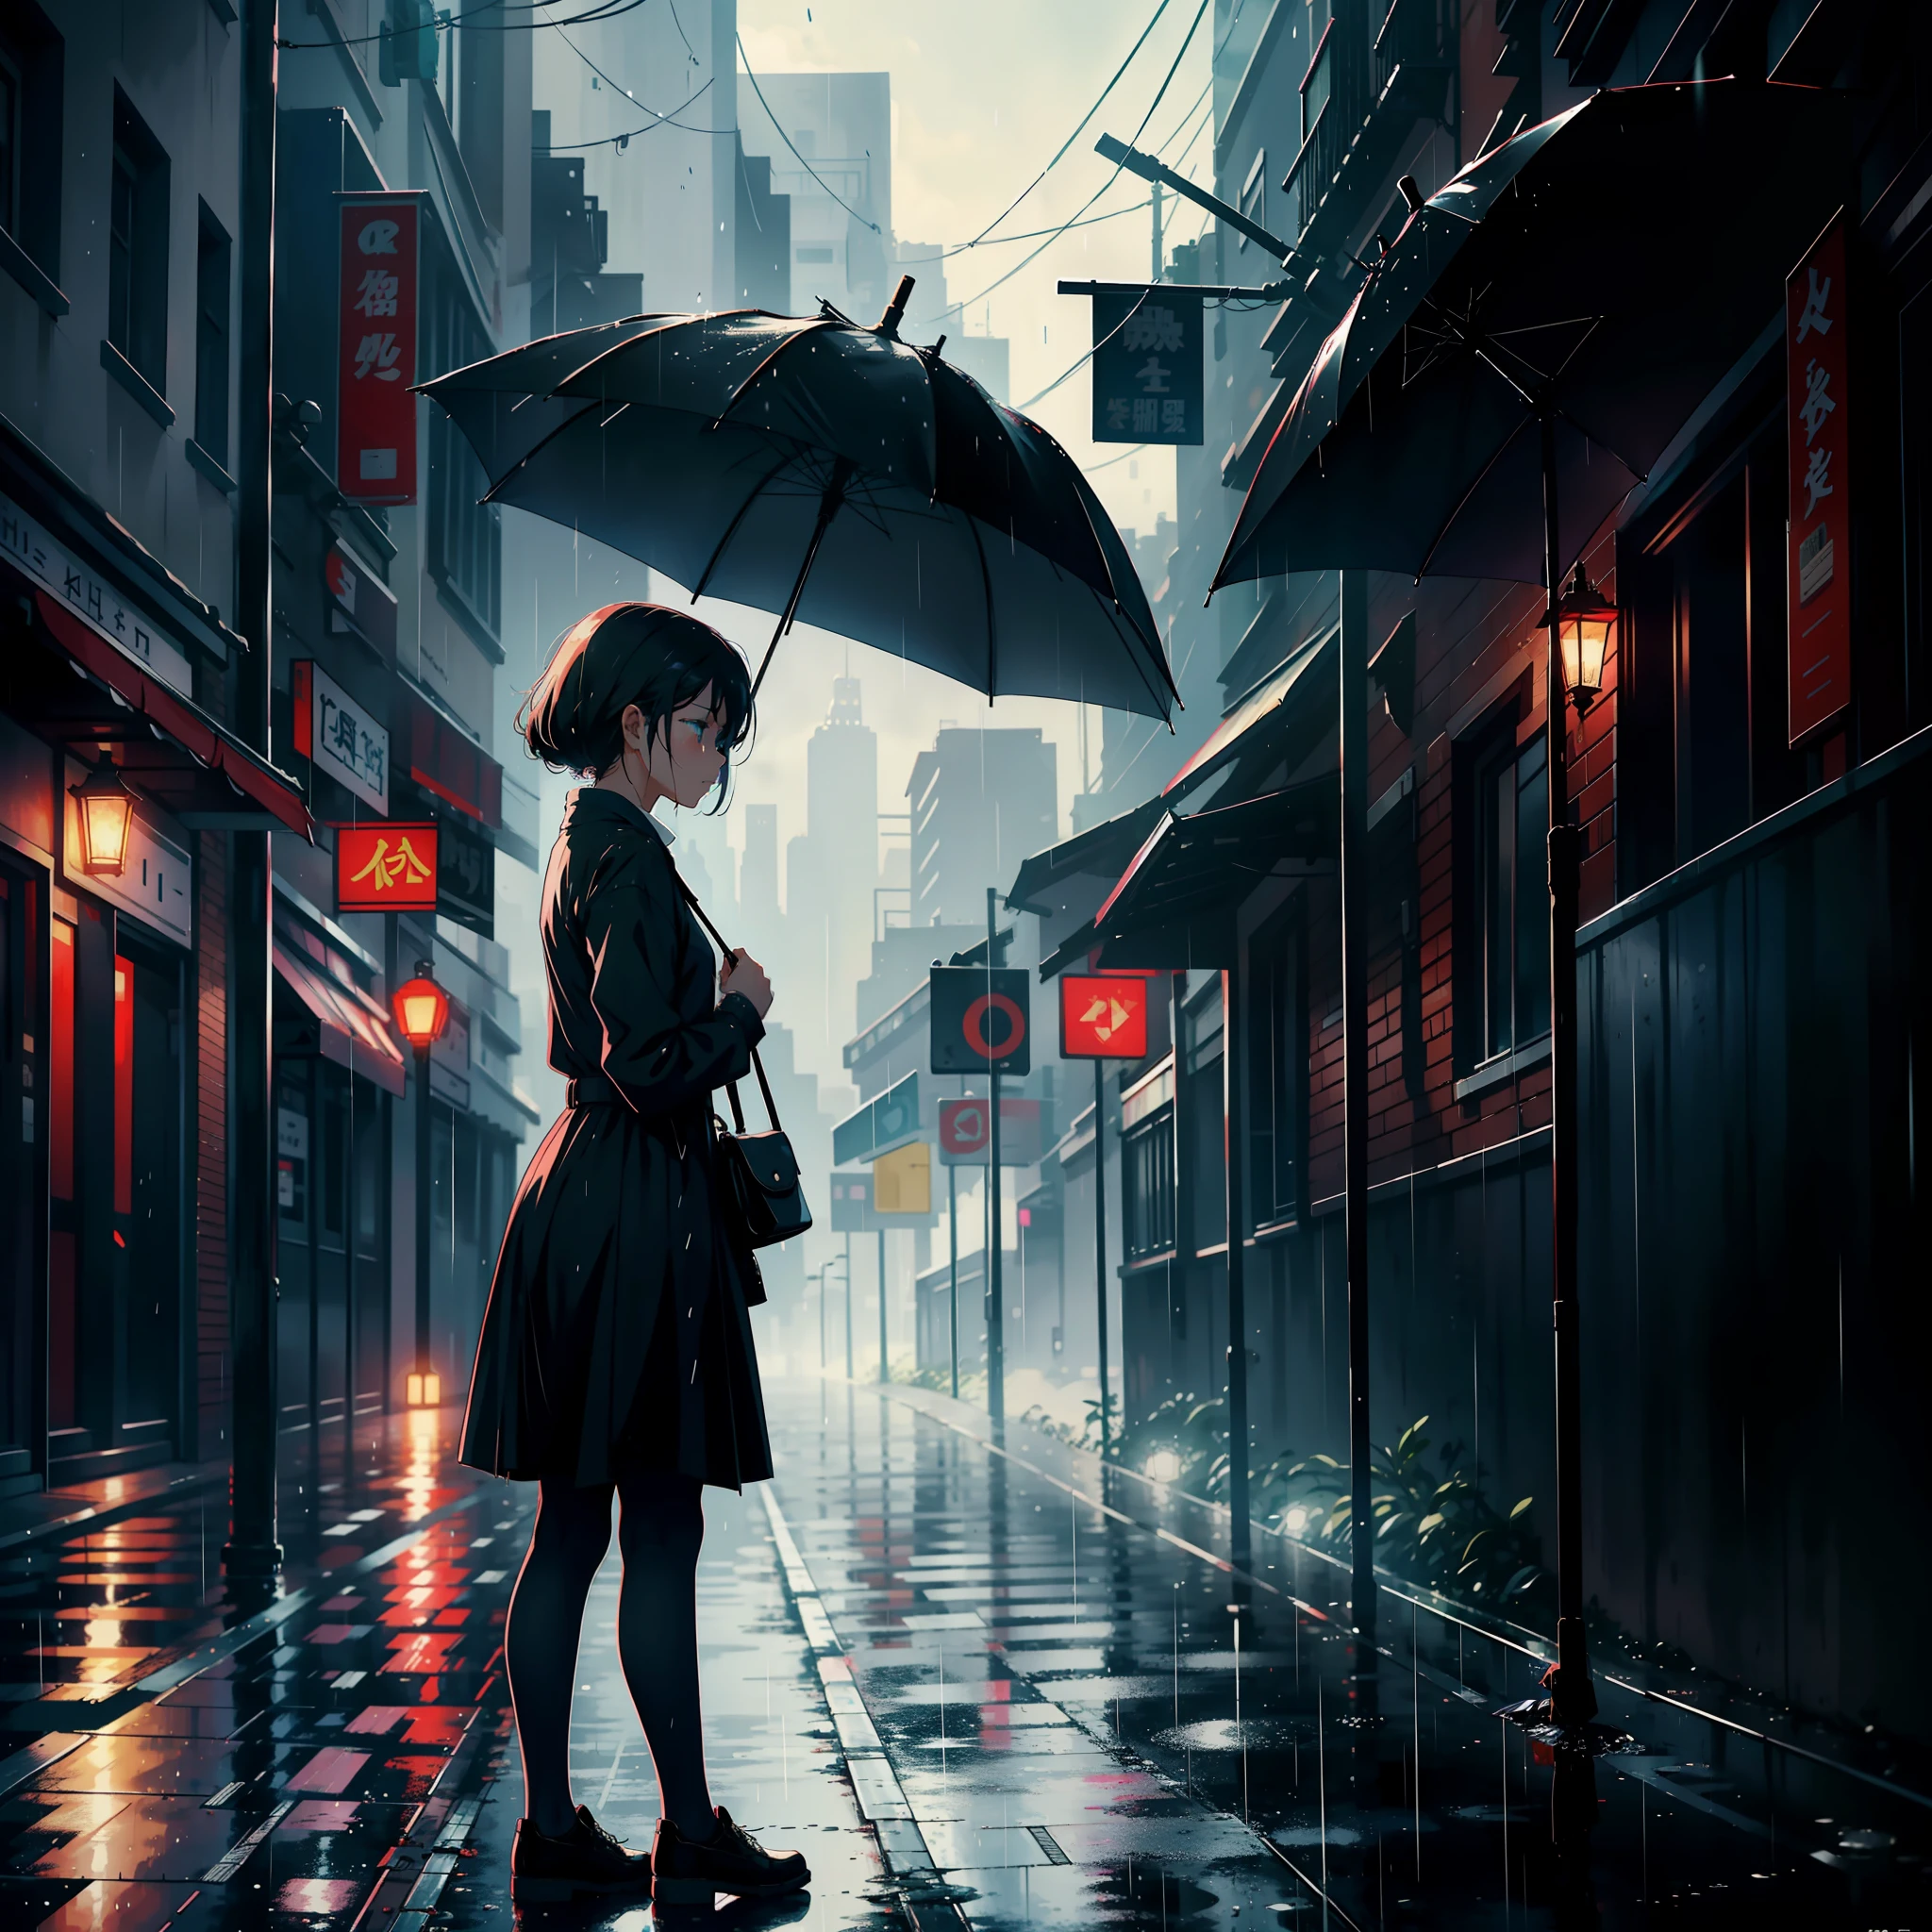 Una chica con un paraguas estaba parada a un lado de la calle, llanto, luciendo triste y lloviendo